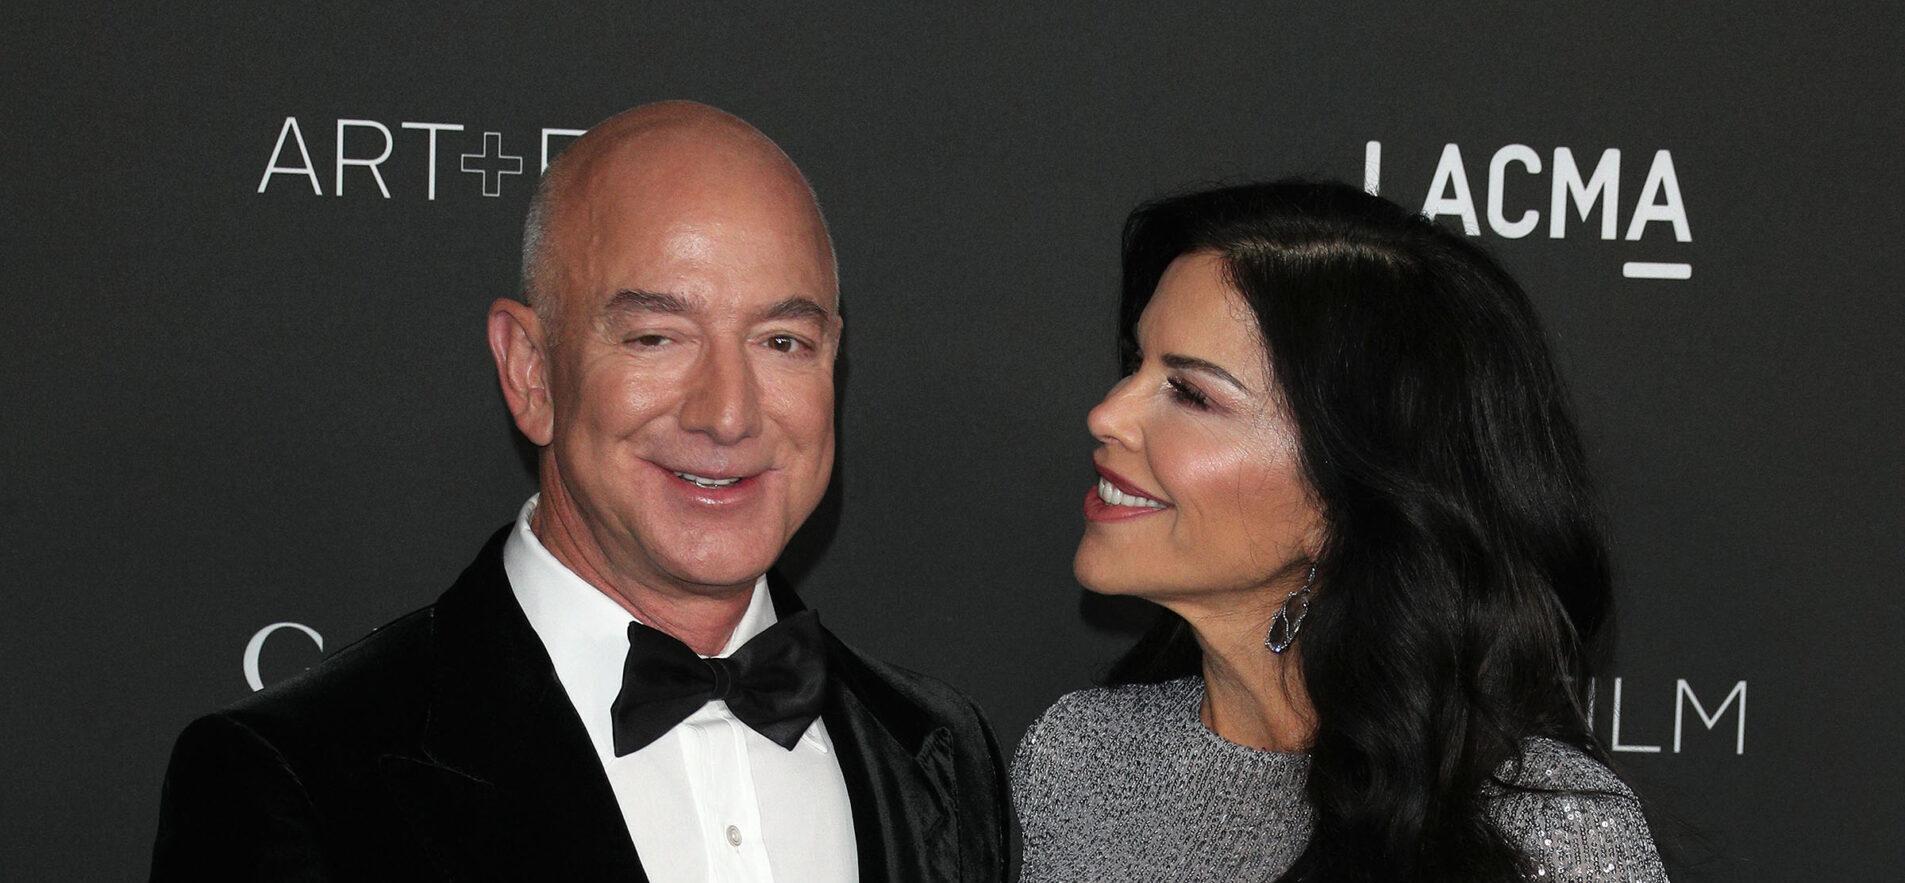 Jeff Bezos & Fiancée Lauren Sánchez Host Grand Engagement Bash Aboard $500 Million Yacht